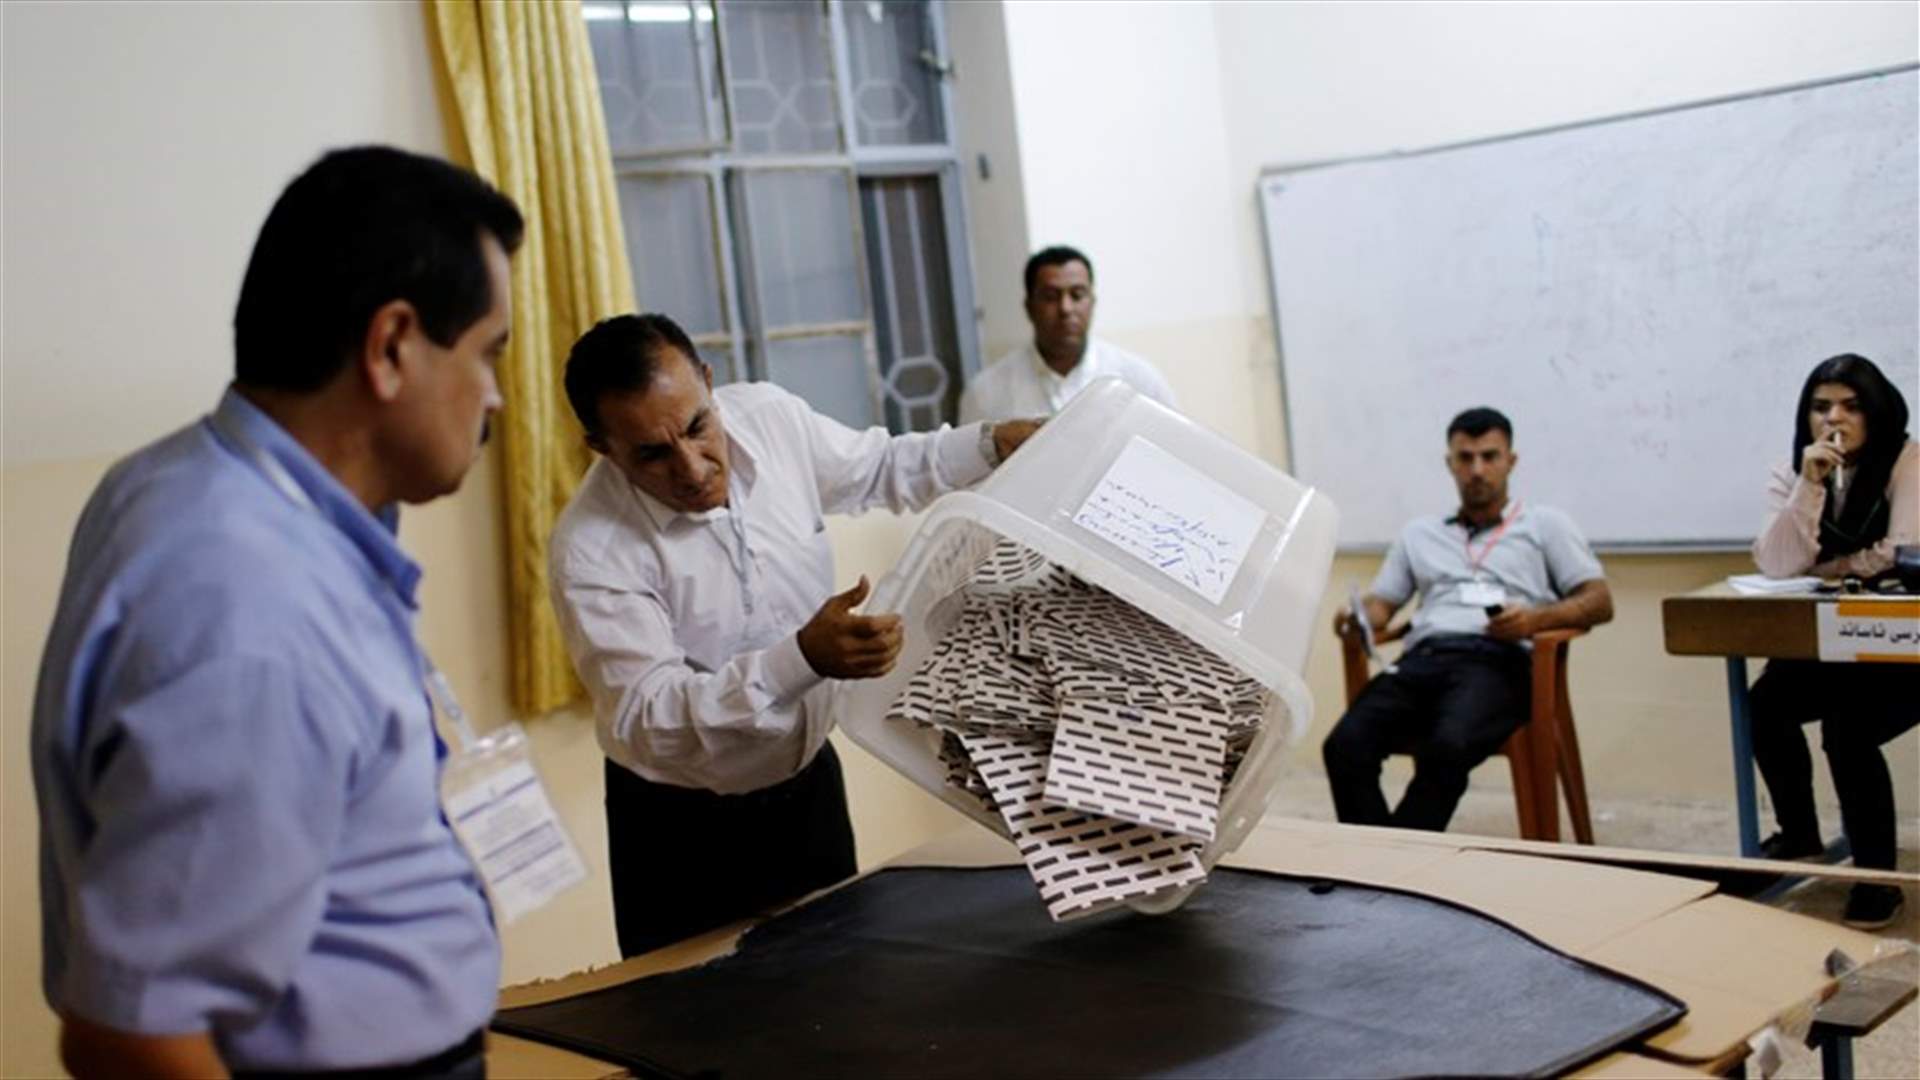 الديمقراطي الكردستاني الحاكم يتصدر الانتخابات البرلمانية في كردستان العراق